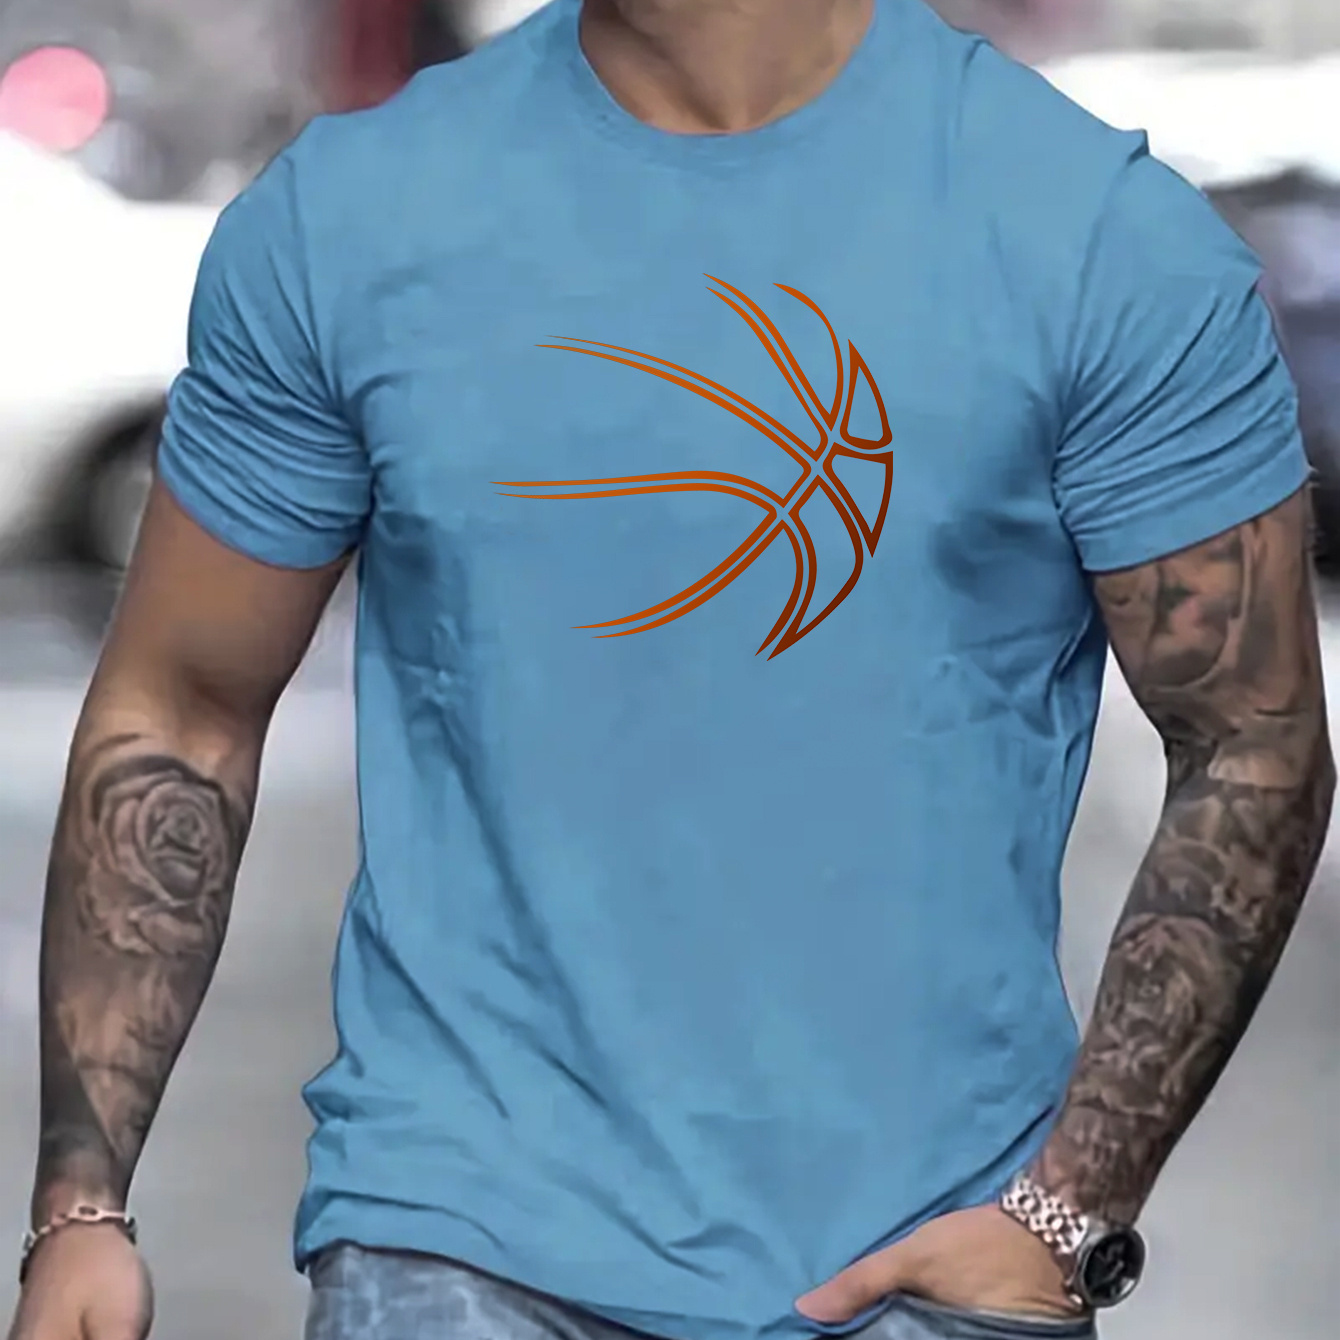 

Imprimé Graphique De Basket-ball, T-shirt Décontracté Pour Hommes, Vêtements Cool Pour Hommes Pour L'été Pour Les Activités Quotidiennes